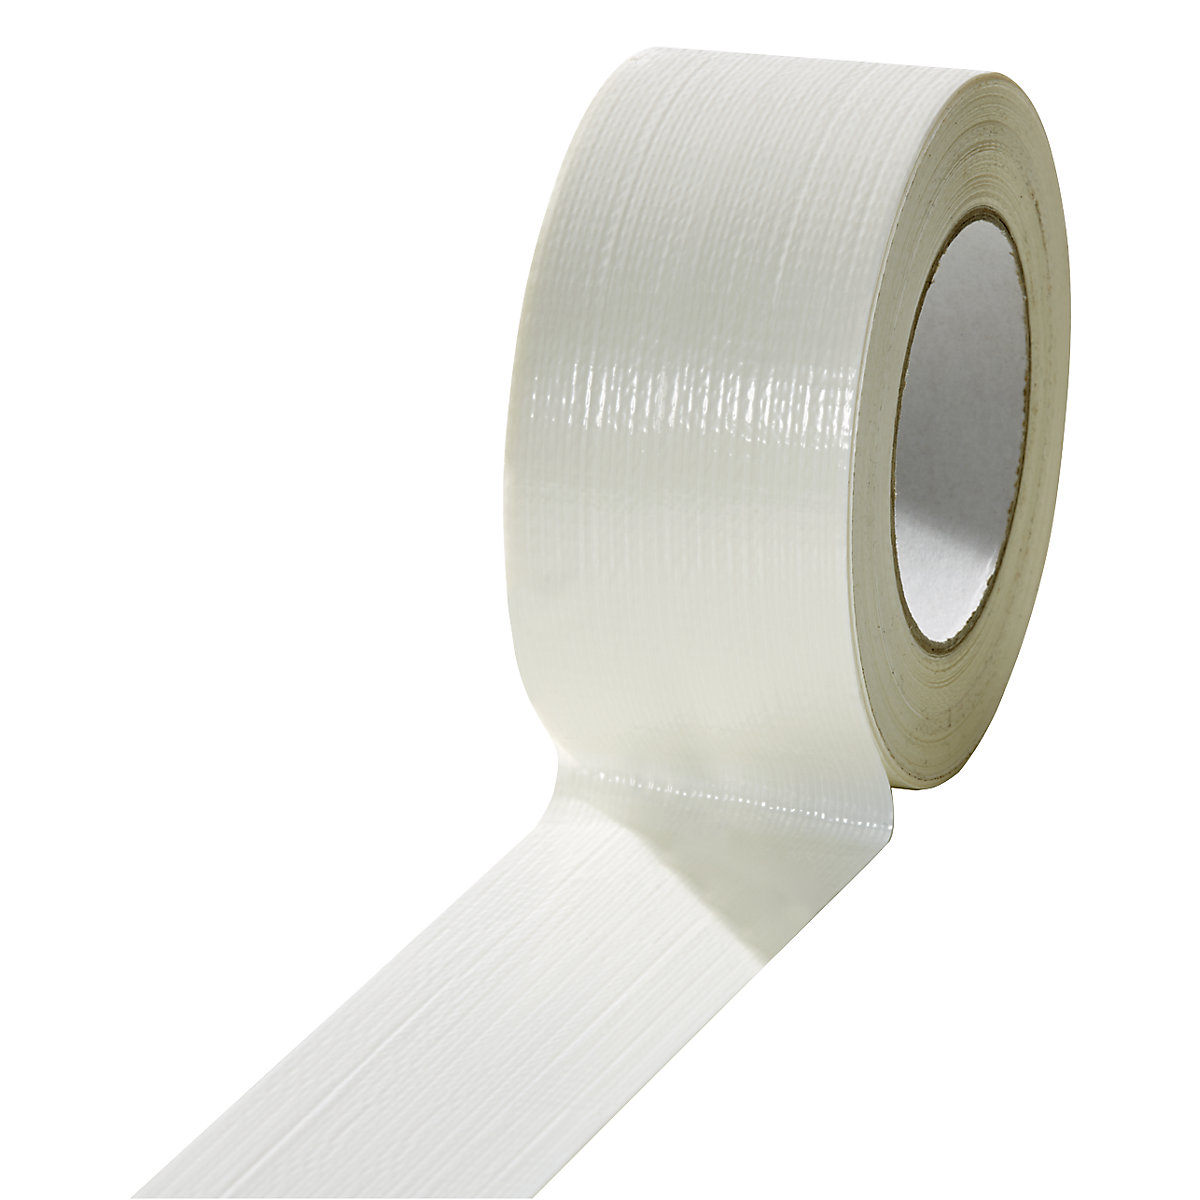 Textilná páska, v rôznych farbách, OJ 18 kotúčov, biela, šírka pásky 50 mm-4